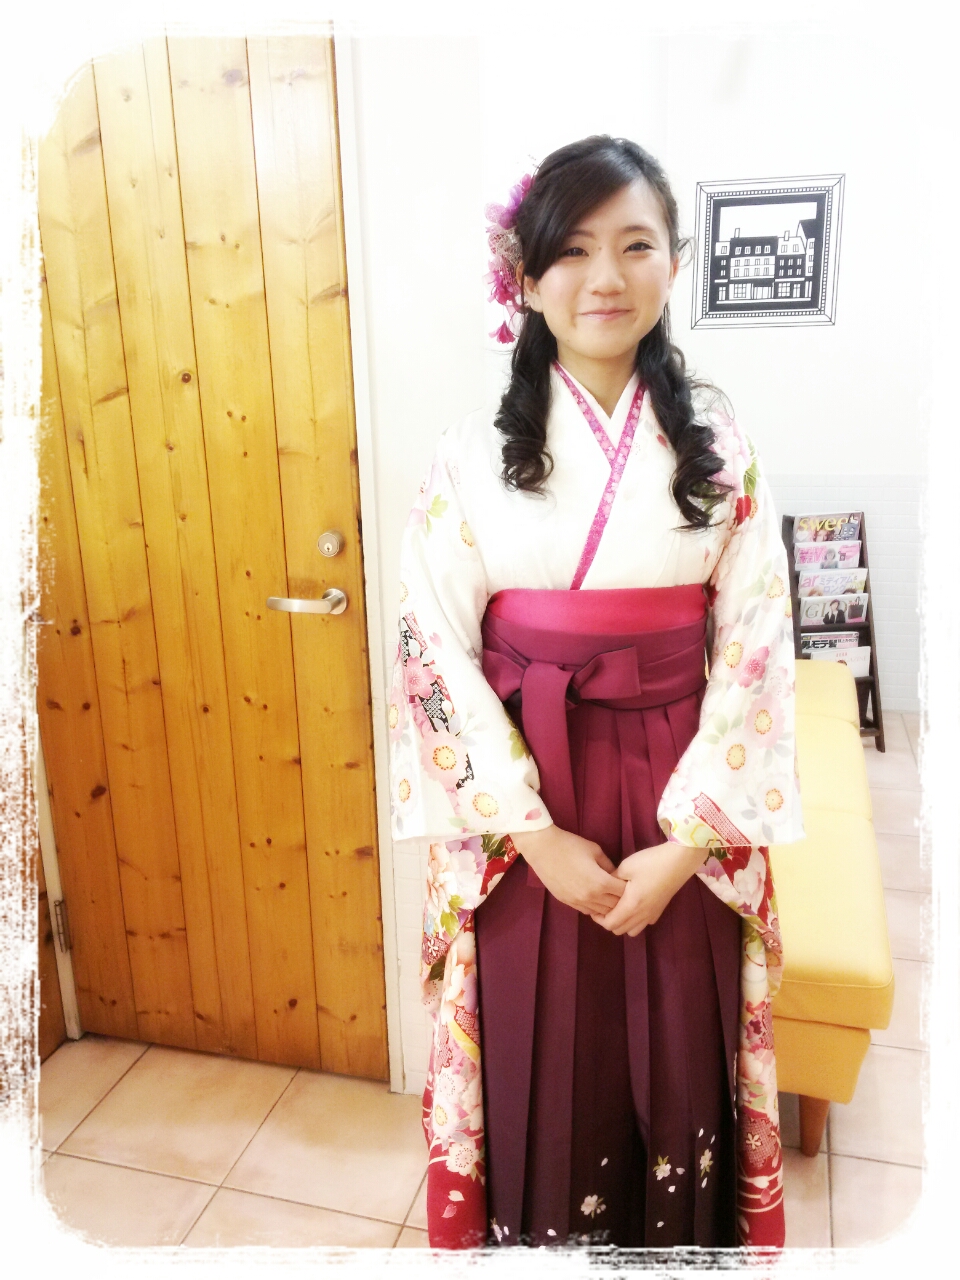 68選卒業式の袴姿にはハーフアップのヘアが可愛い 女子力up応援サイト